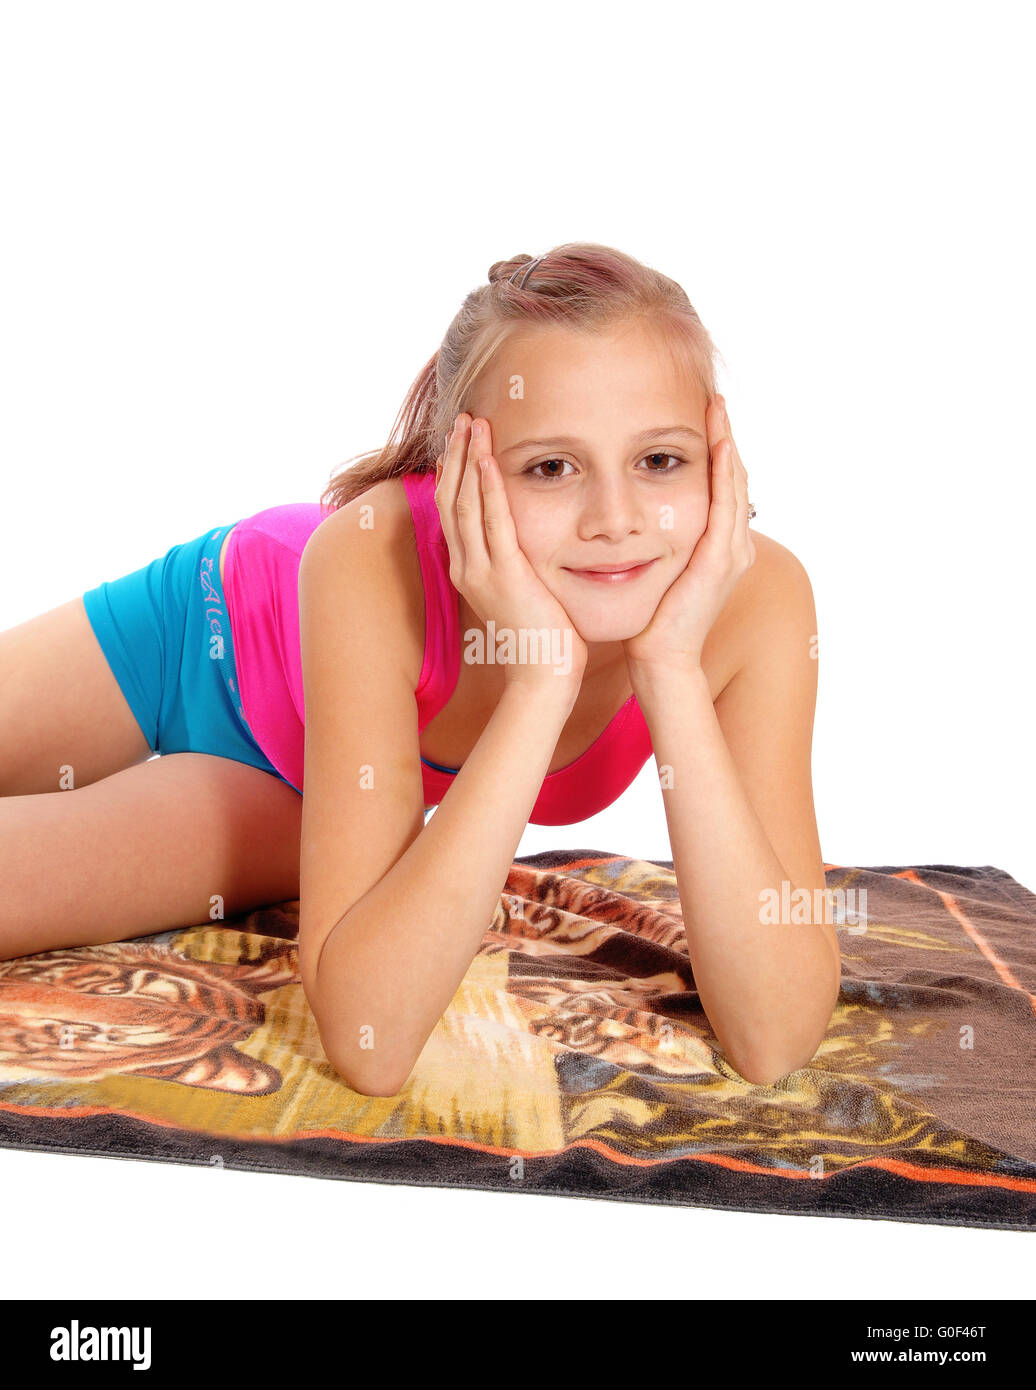 Nahaufnahme von jungen Mädchen im Badeanzug auf dem Boden liegend. Stockfoto